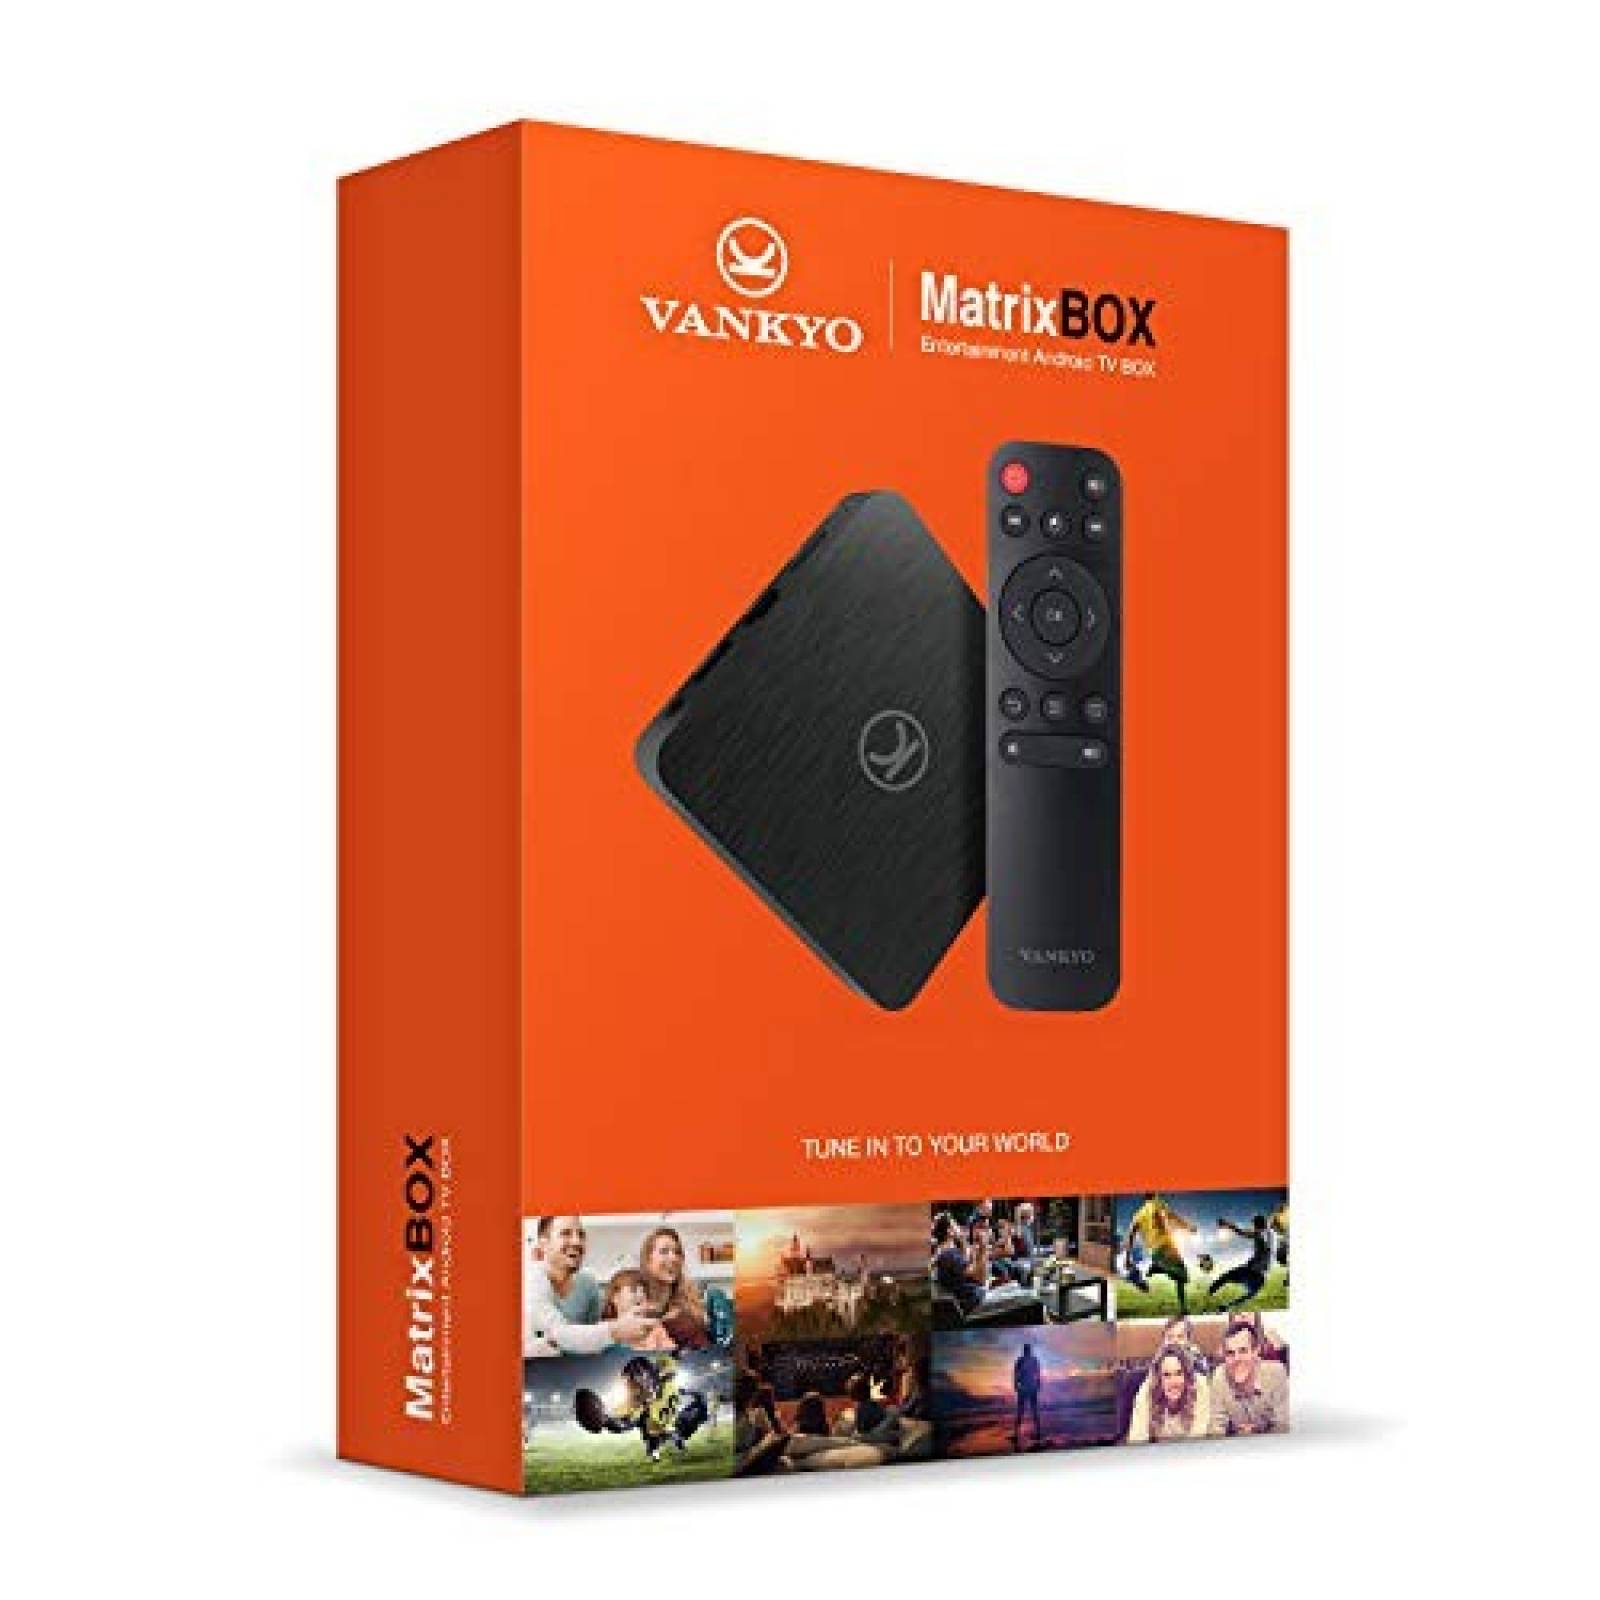 Reproductor multimedia de streaming vankyo MatrixBox 16 GB